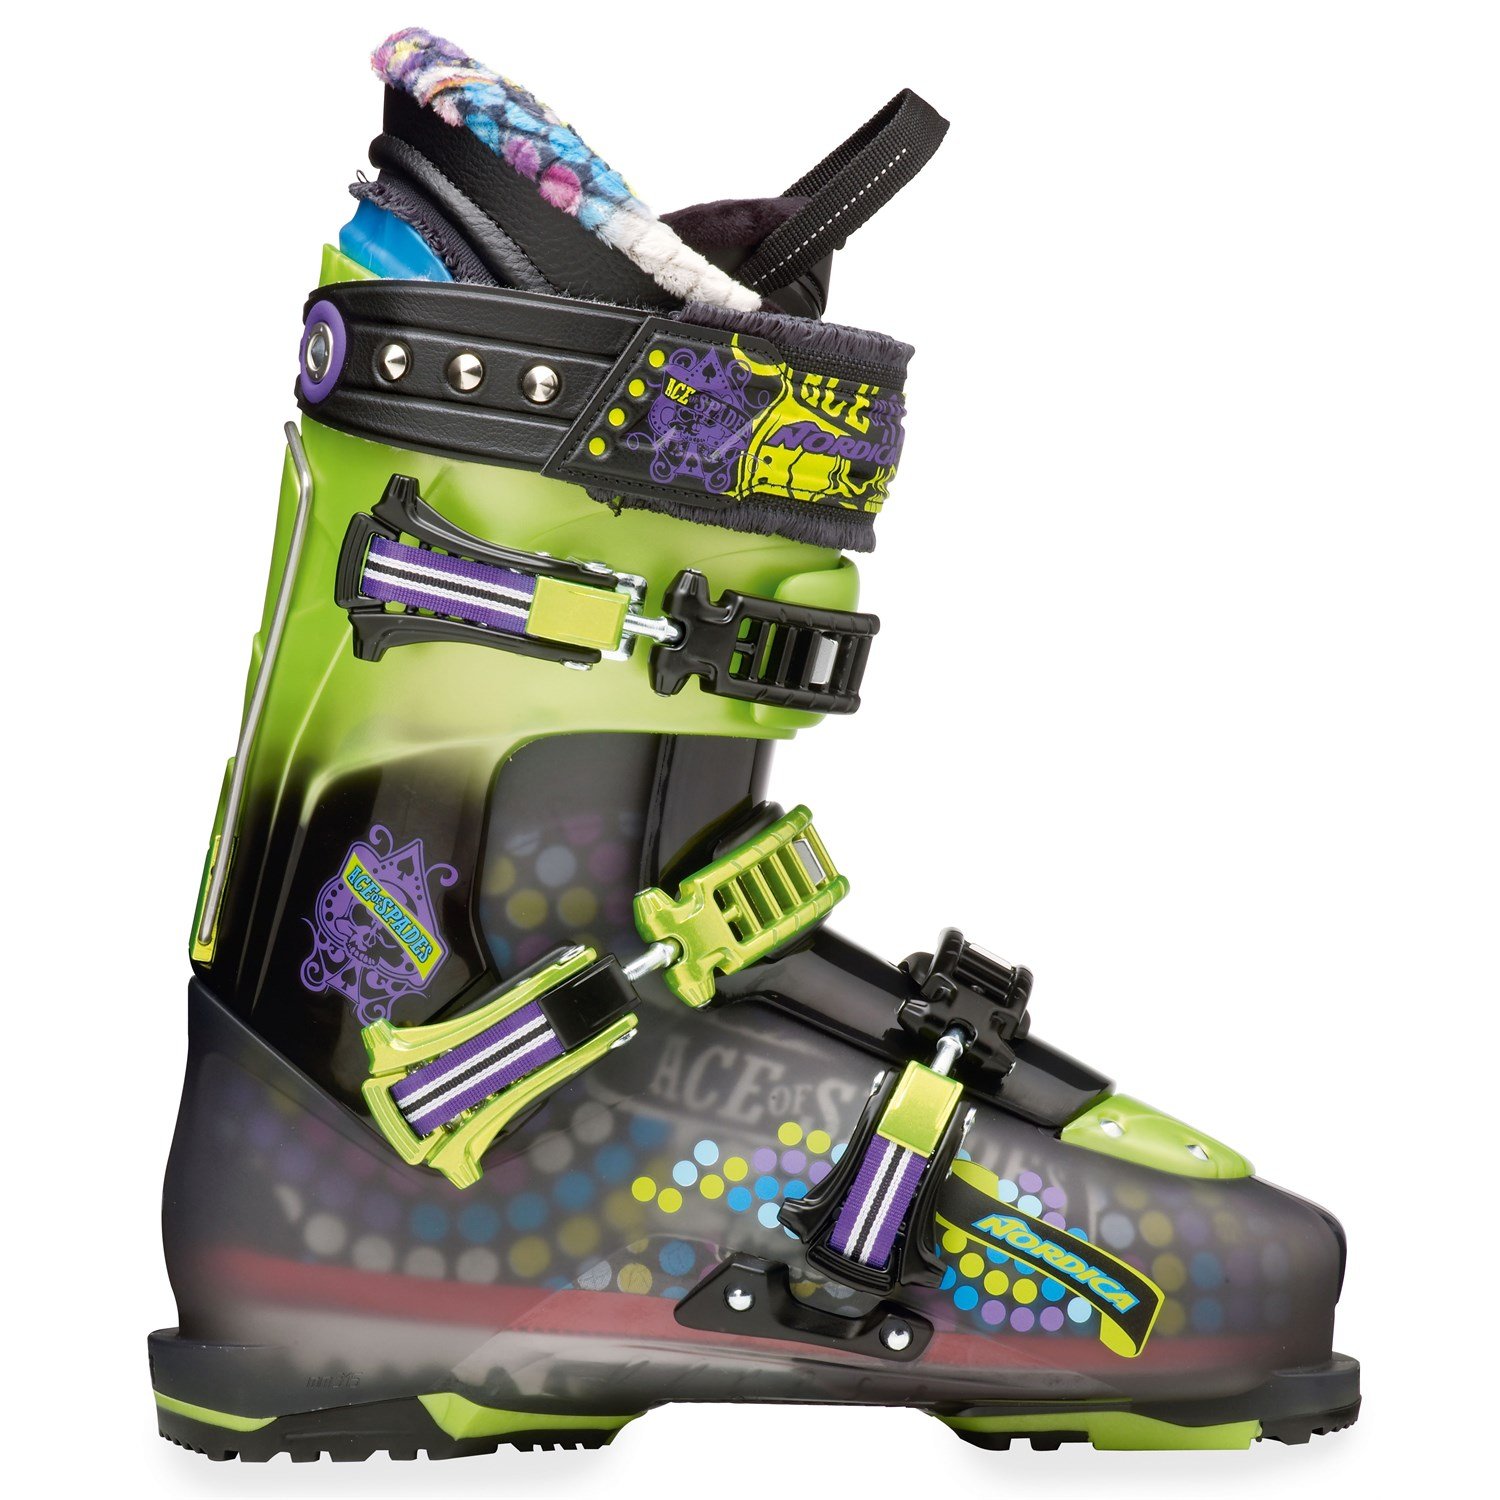 Nordica Ace Of Spades Ski Boots 2013 | evo